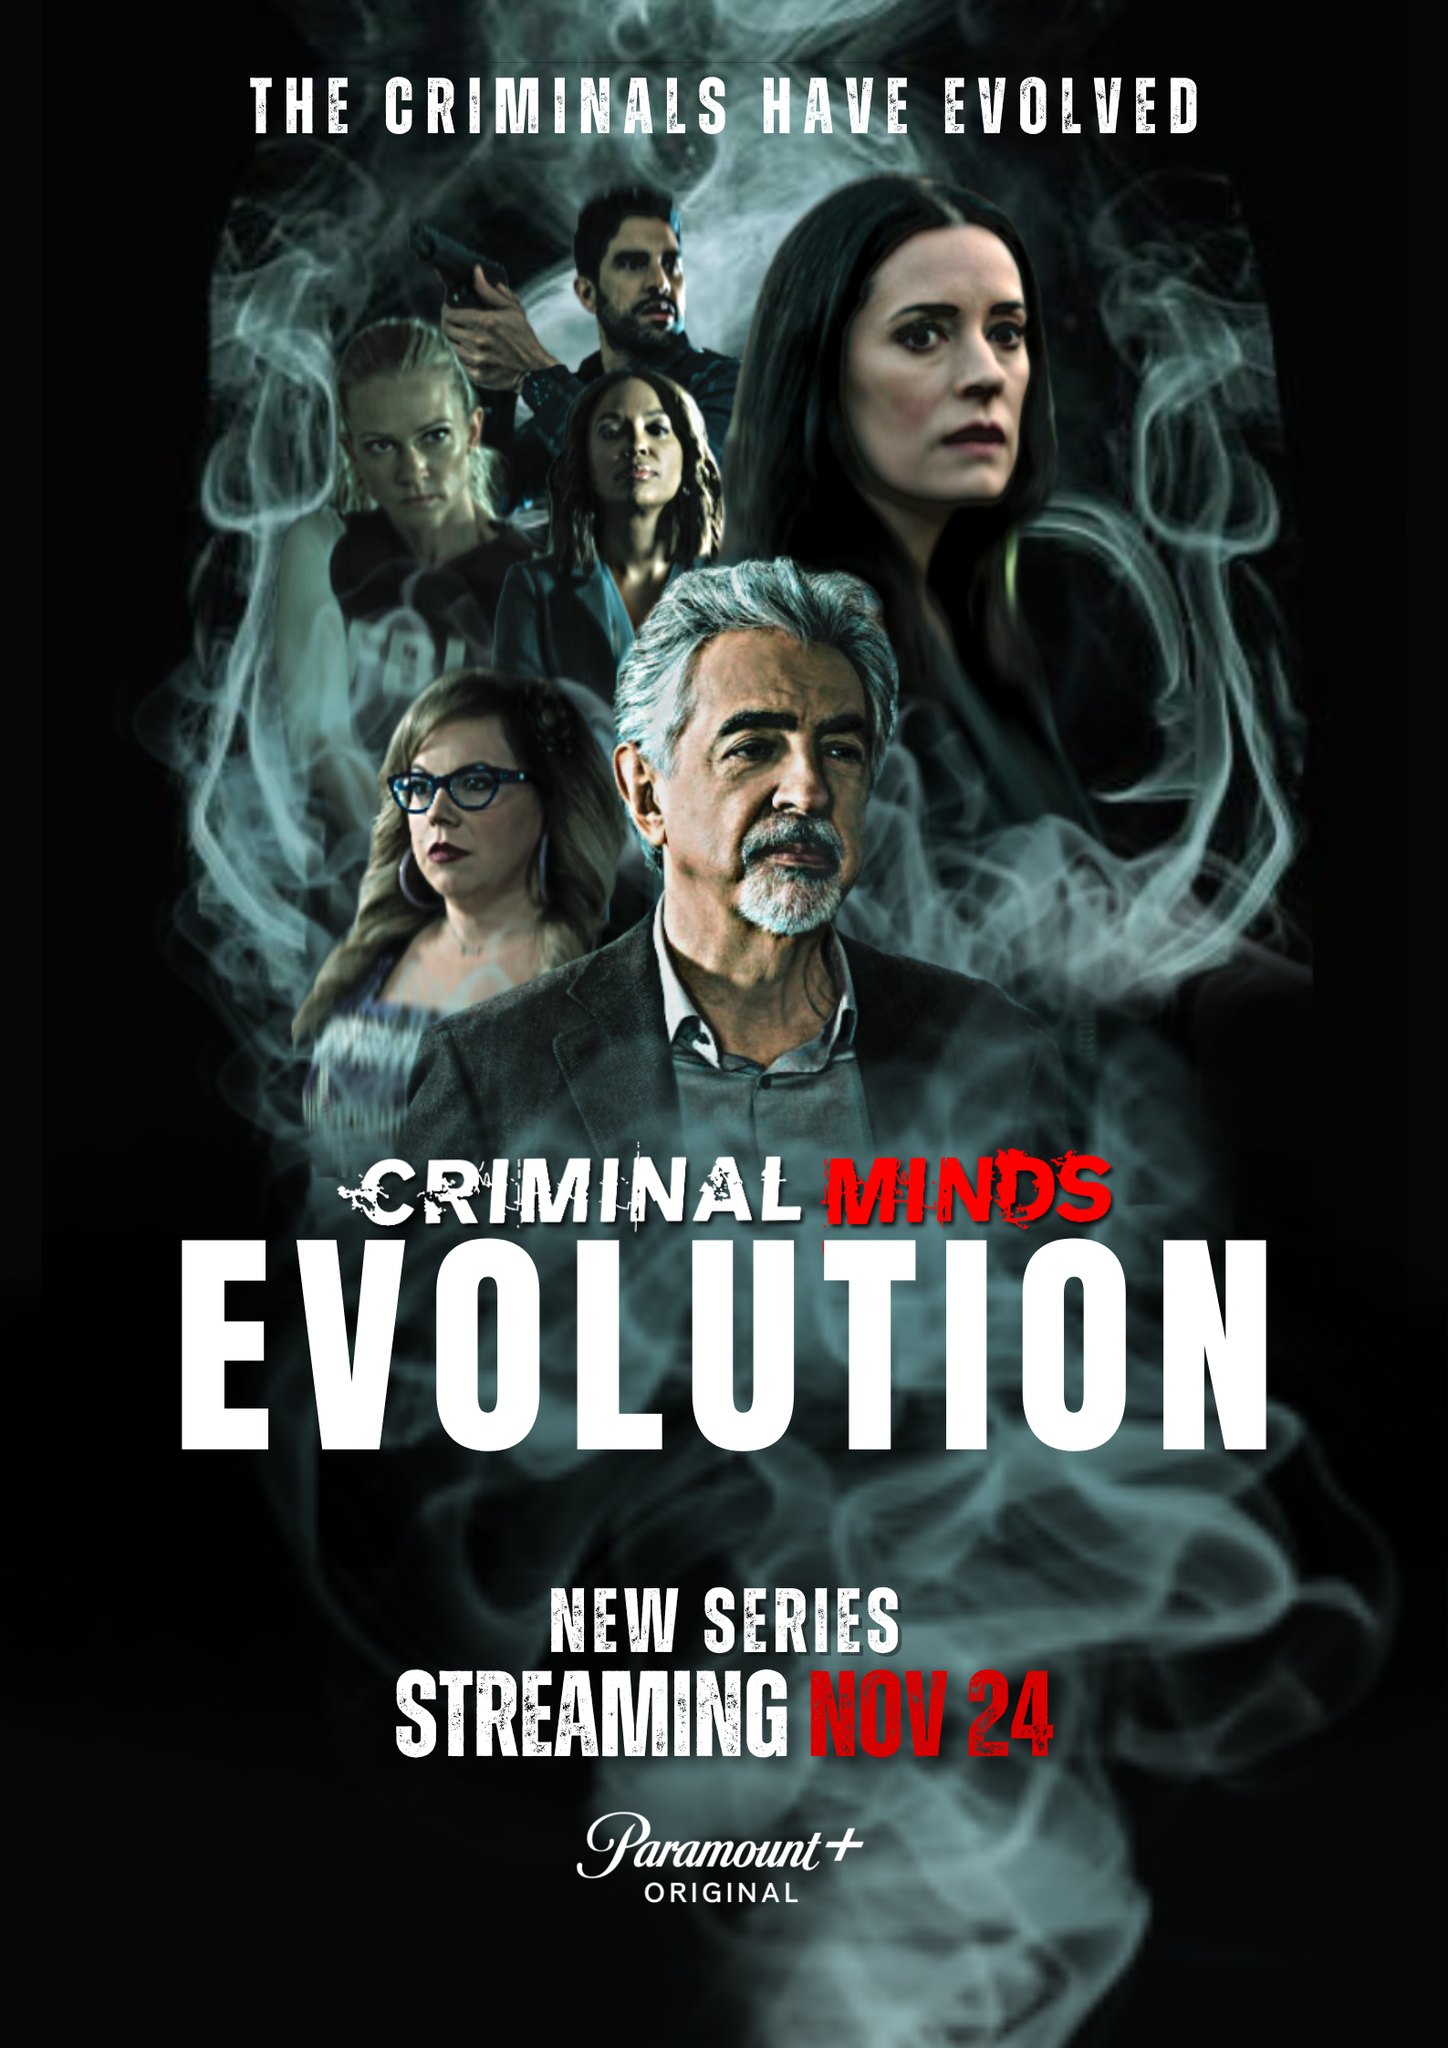 Criminal Minds Evolution Episode 3 Release Date